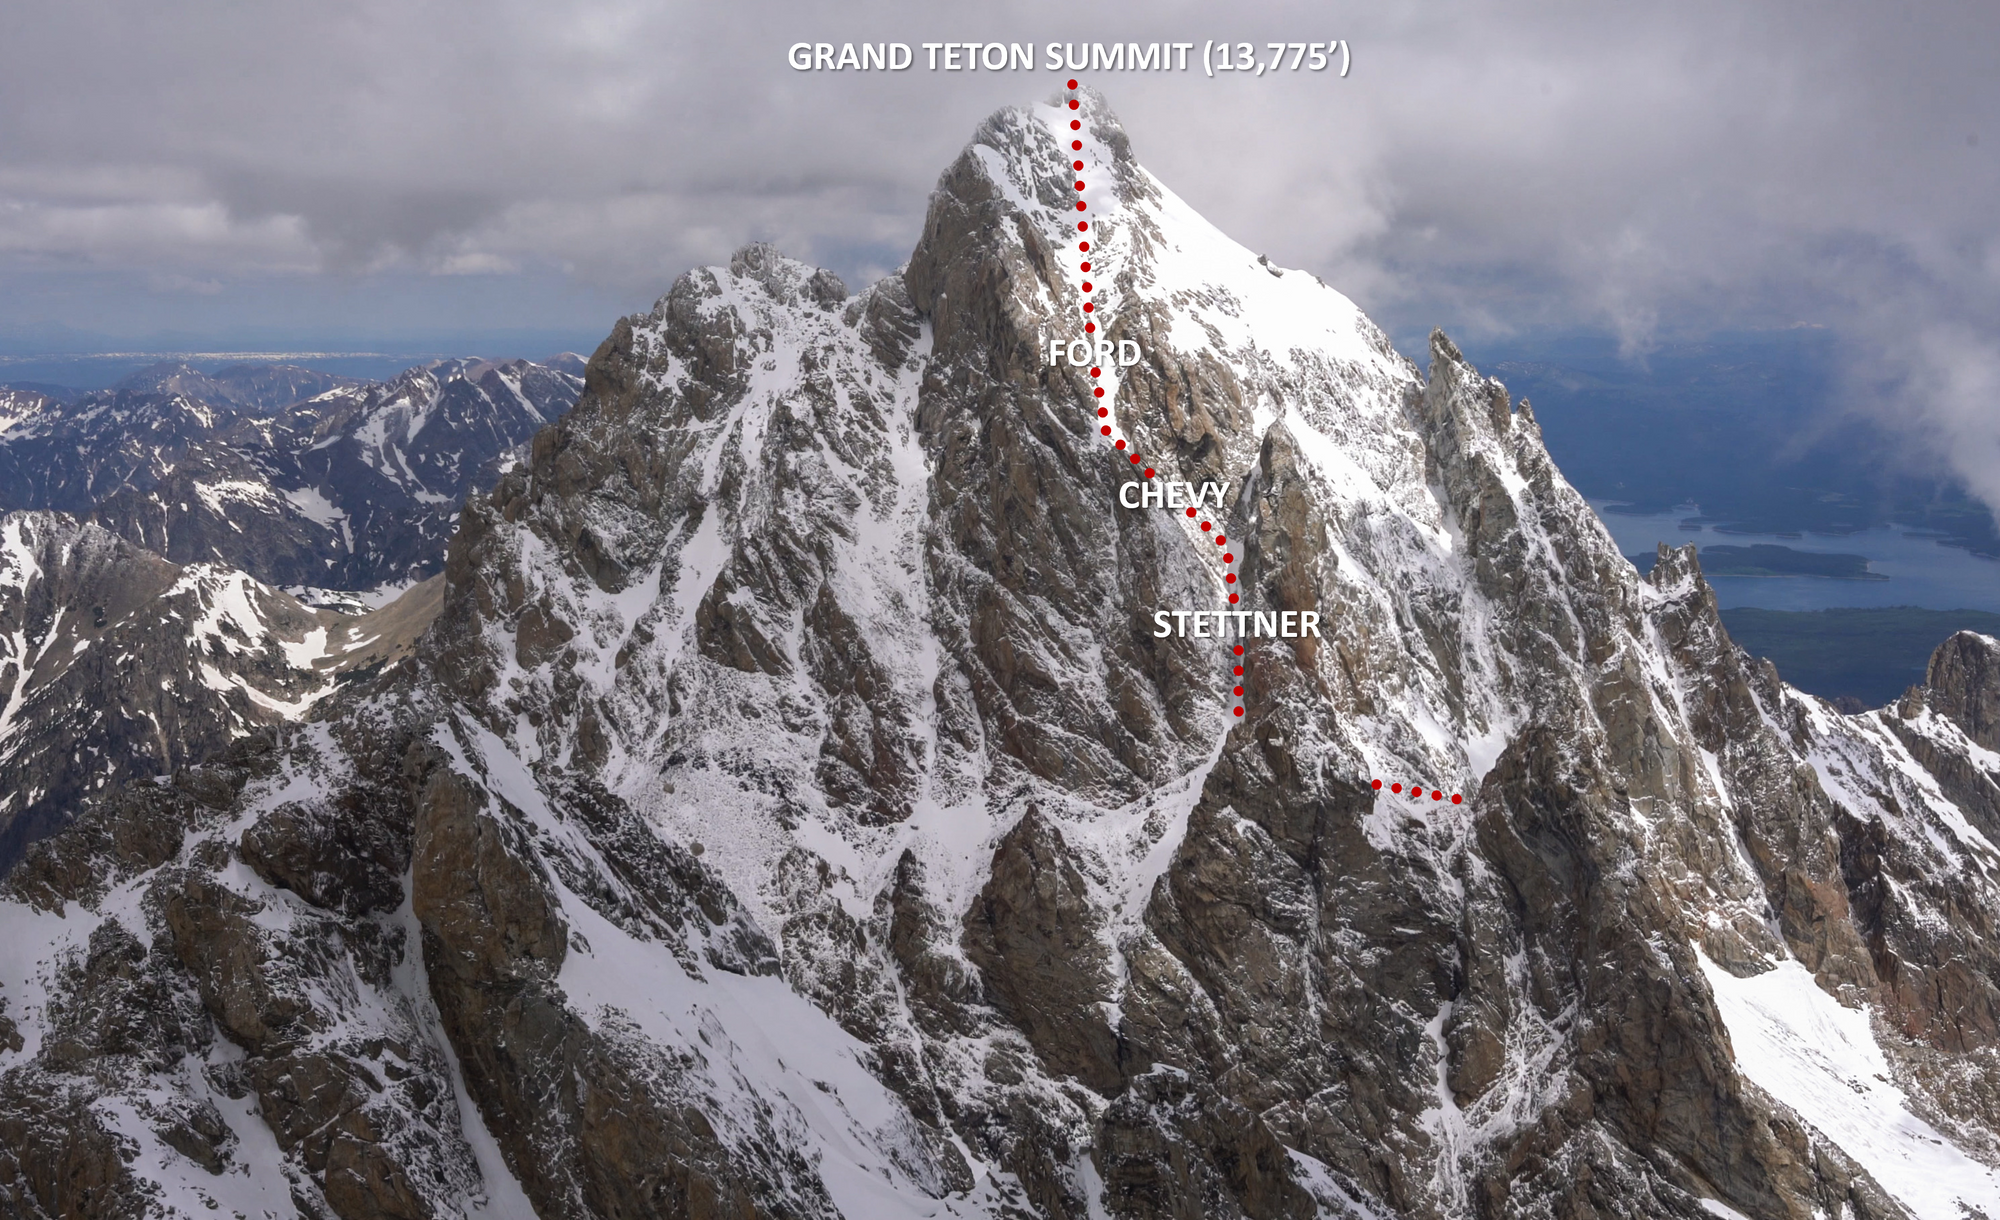 Grand Teton Ski Descent via Ford Stettner